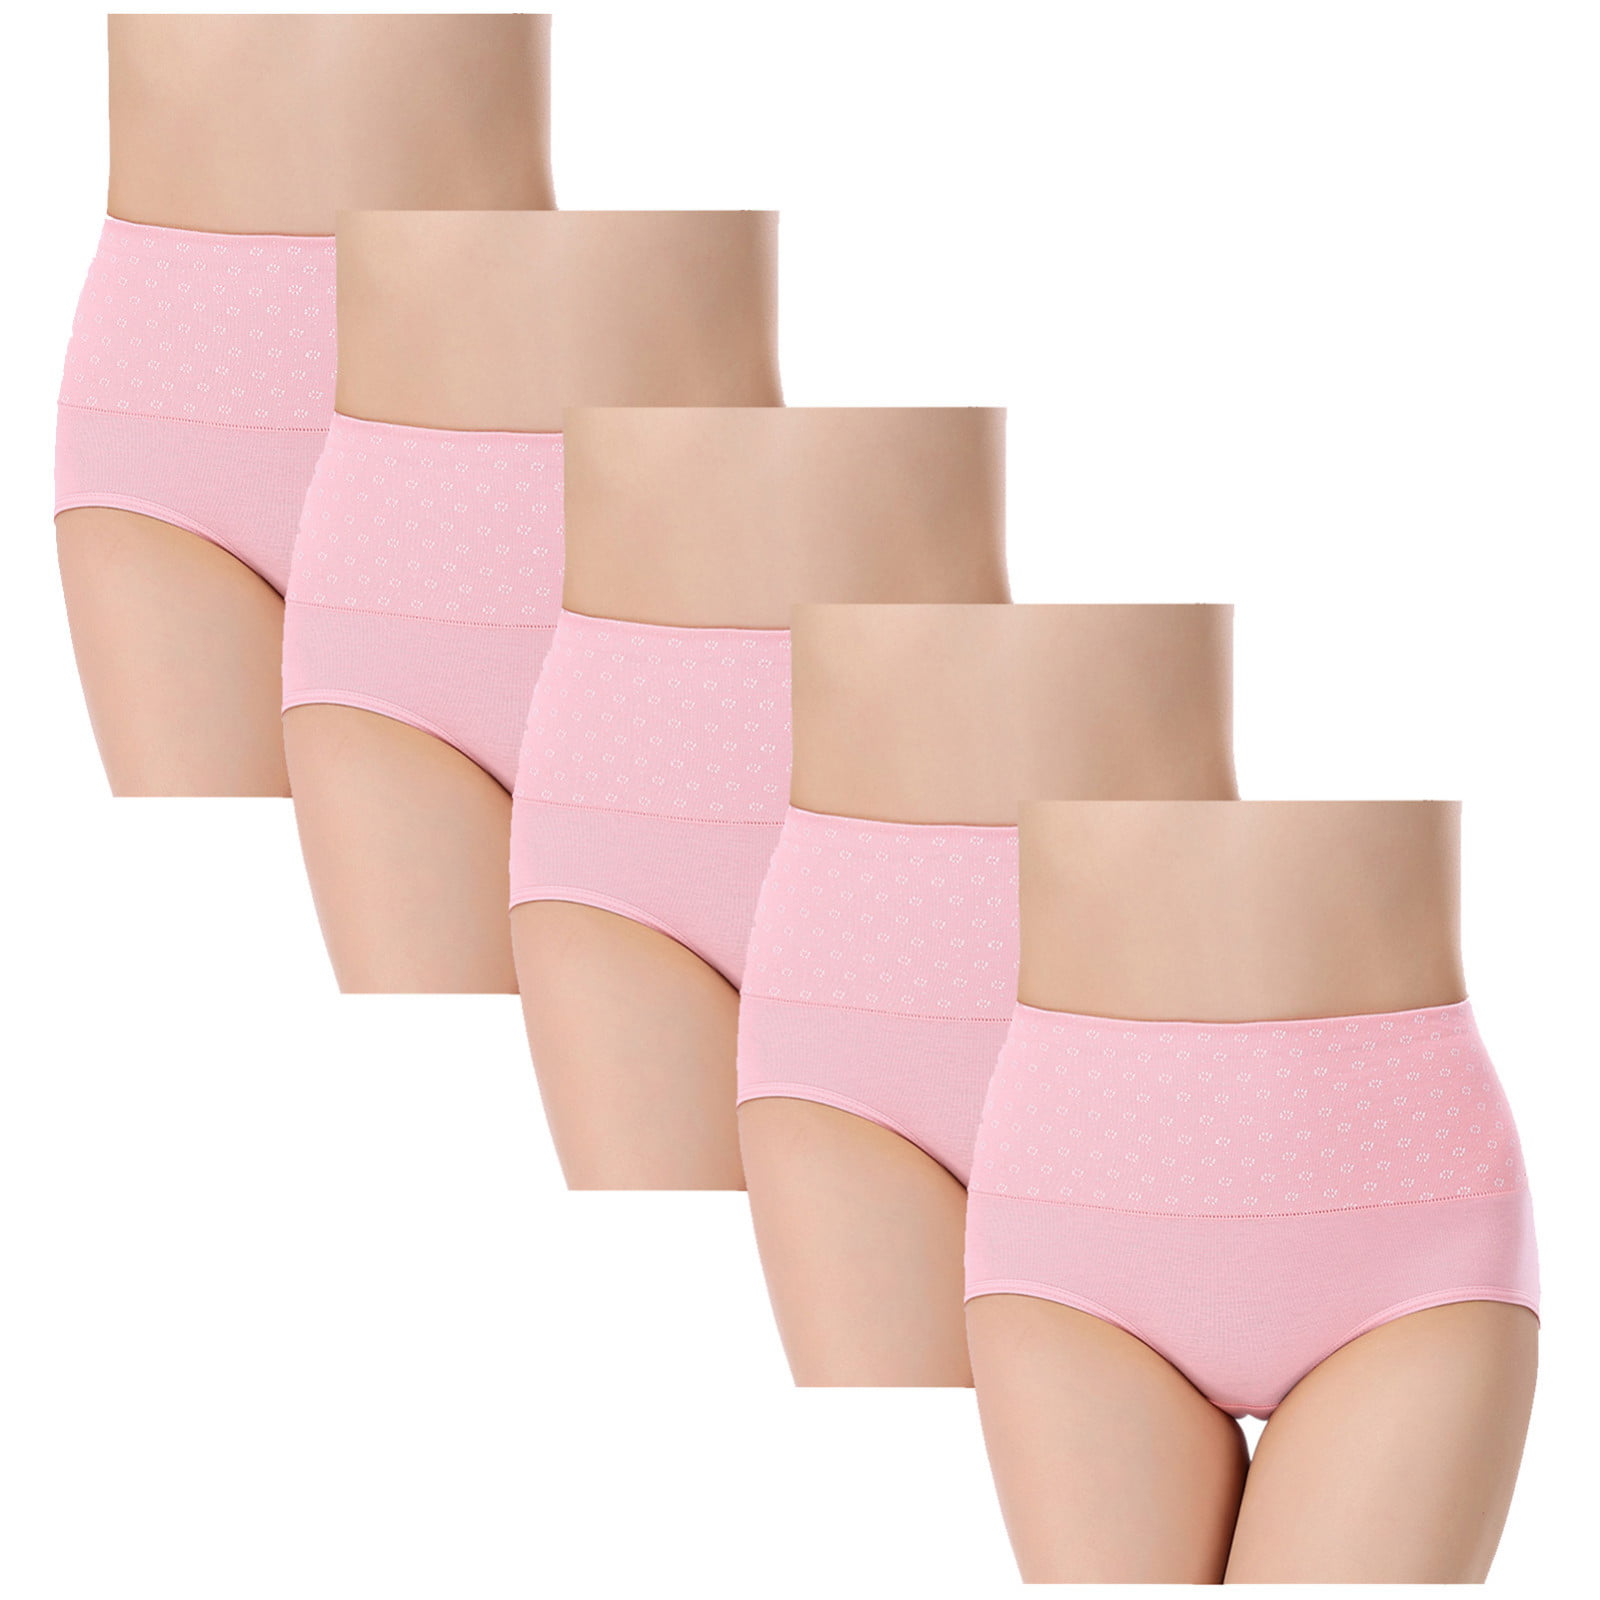 5pcs Women's Briefs Underwear Cotton High Waist Tummy Control